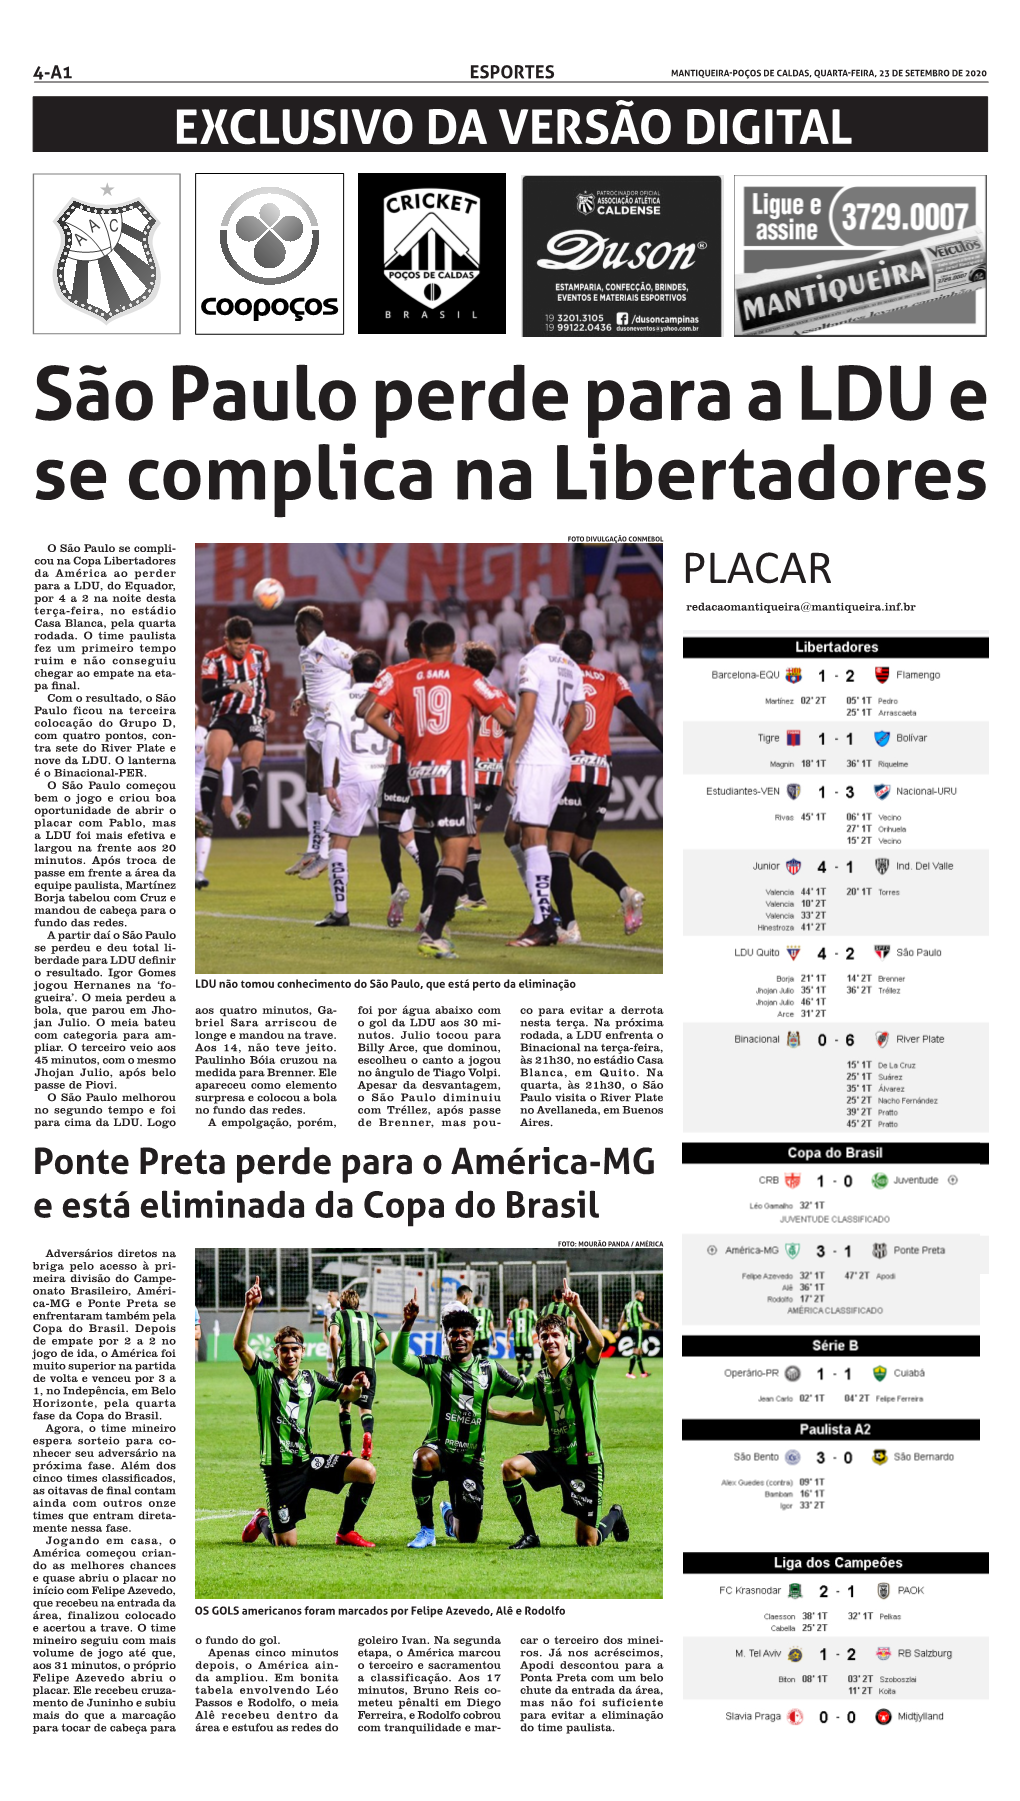 São Paulo Perde Para a LDU E Se Complica Na Libertadores